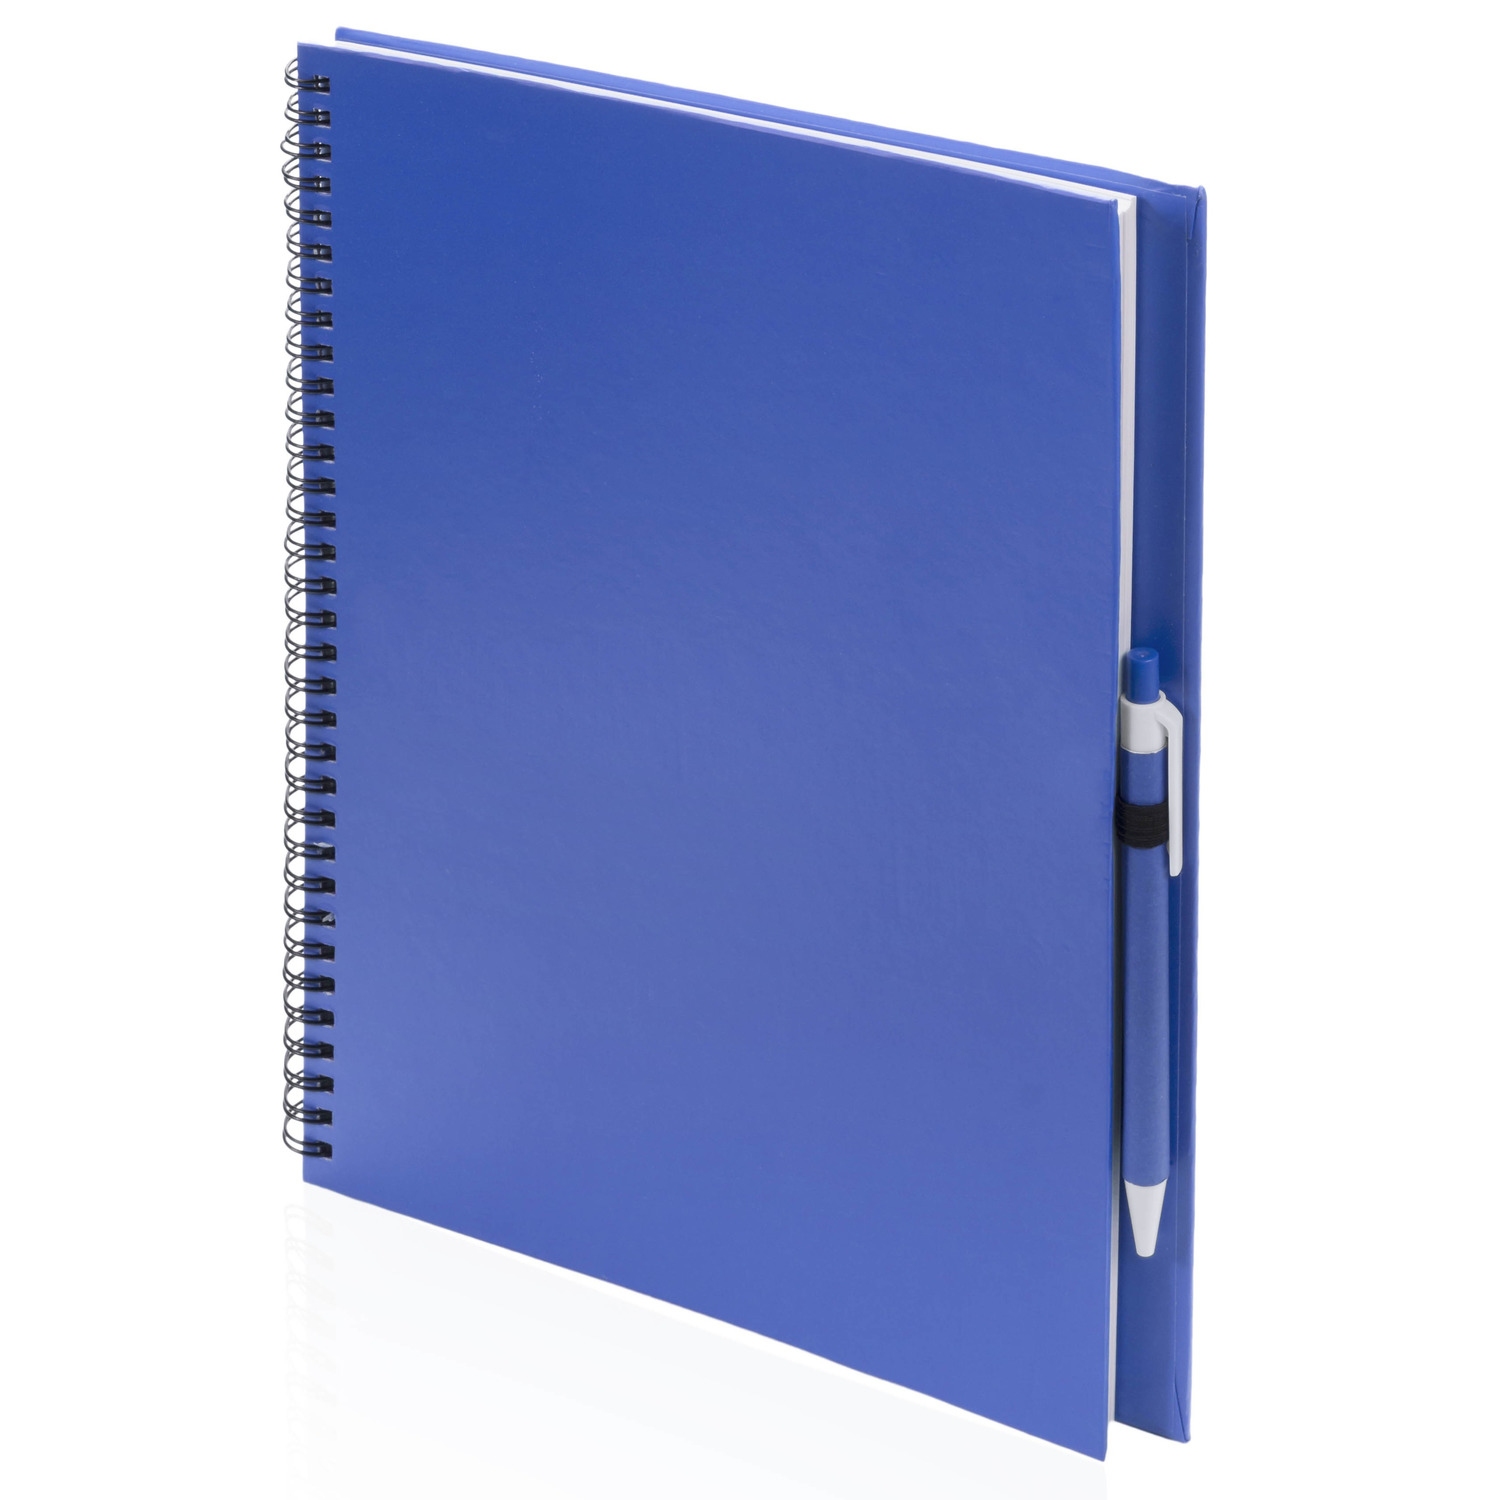 Schetsboek-tekenboek blauw A4 formaat 80 vellen inclusief pen